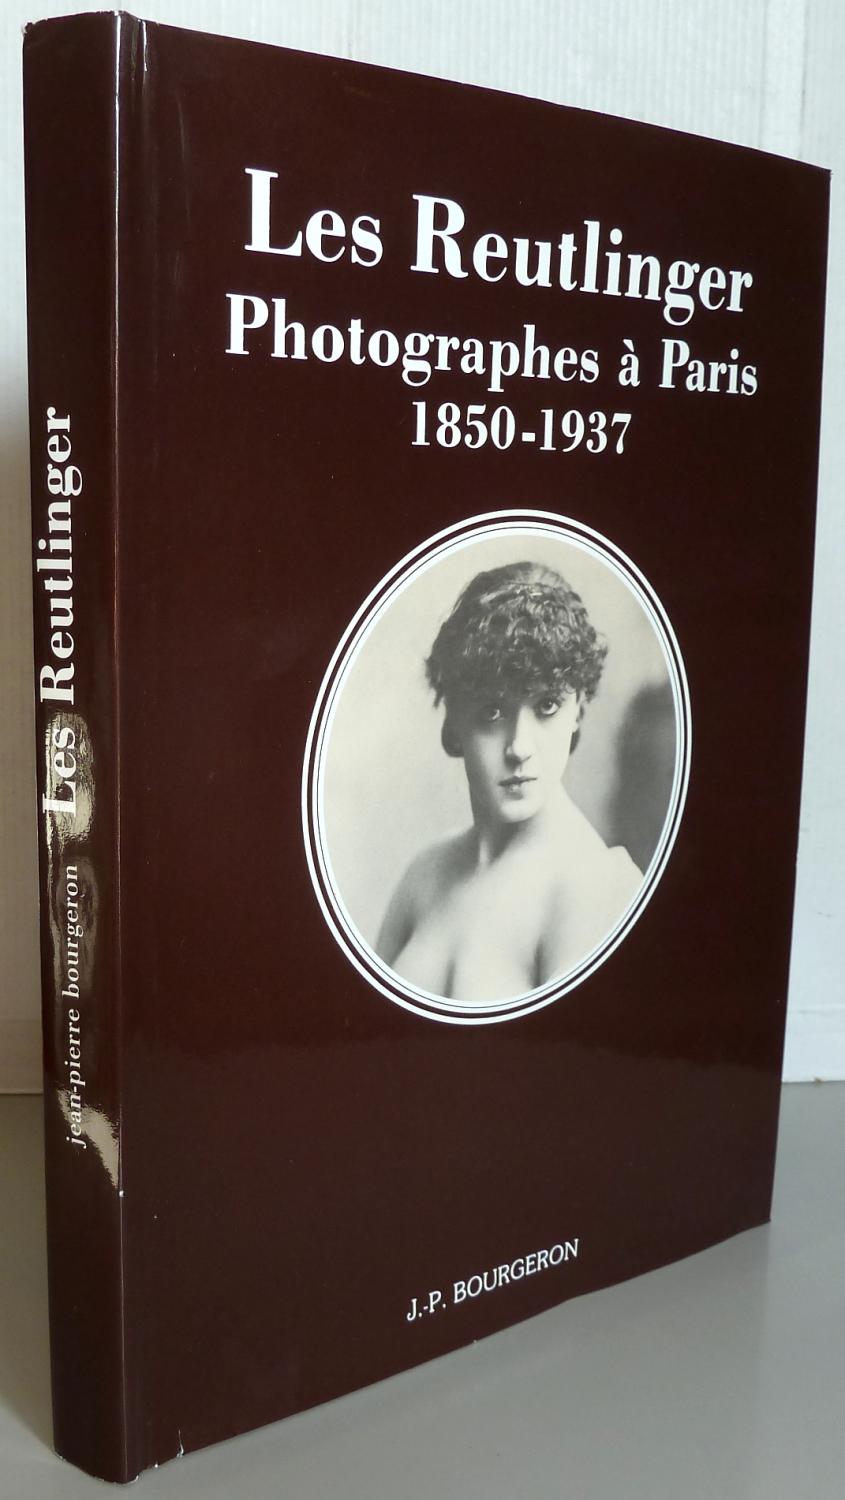 Les Reutlinger : Photographes à Paris, 1850-1937 - Département des estampes et de la photographie Bibliothèque nationale; Jean-Pierre Bourgeron